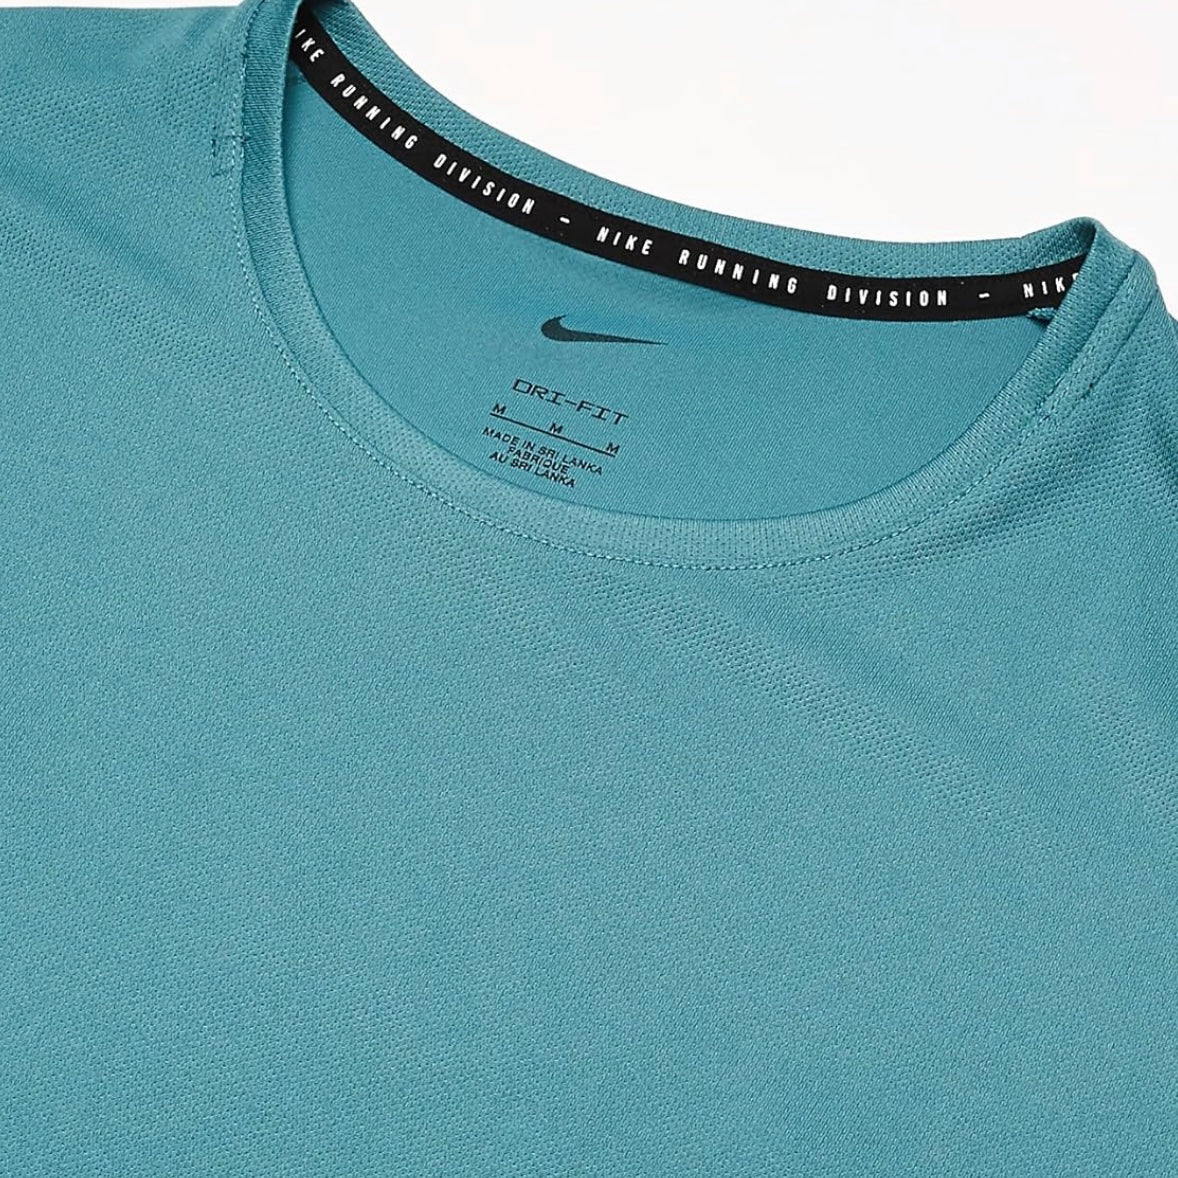 Nike Dri-Fit UV Run DVSN Miler 1.0 T-Shirt - Mineral Teal